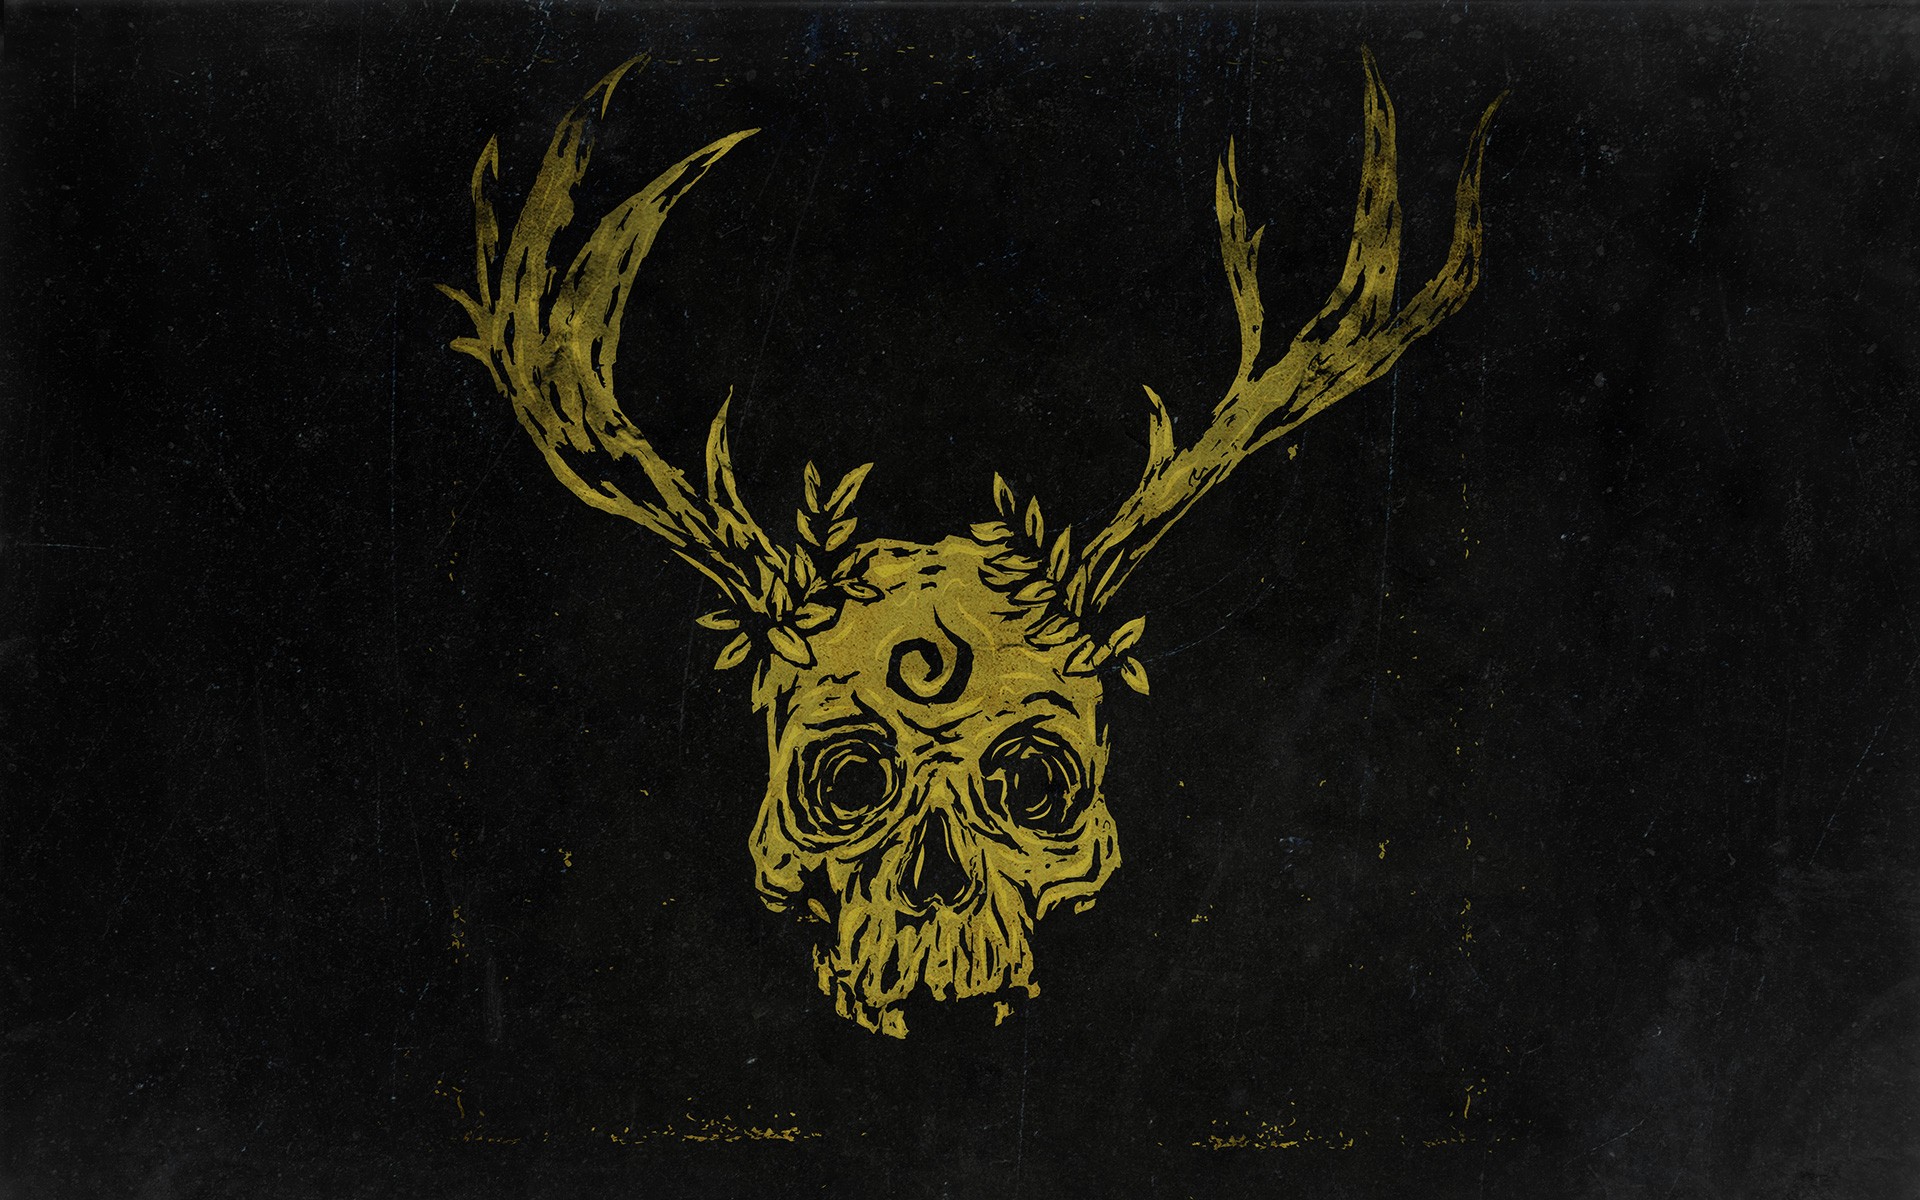 General 1920x1200 skull minimalism black background deer dark artwork True Detective TV series